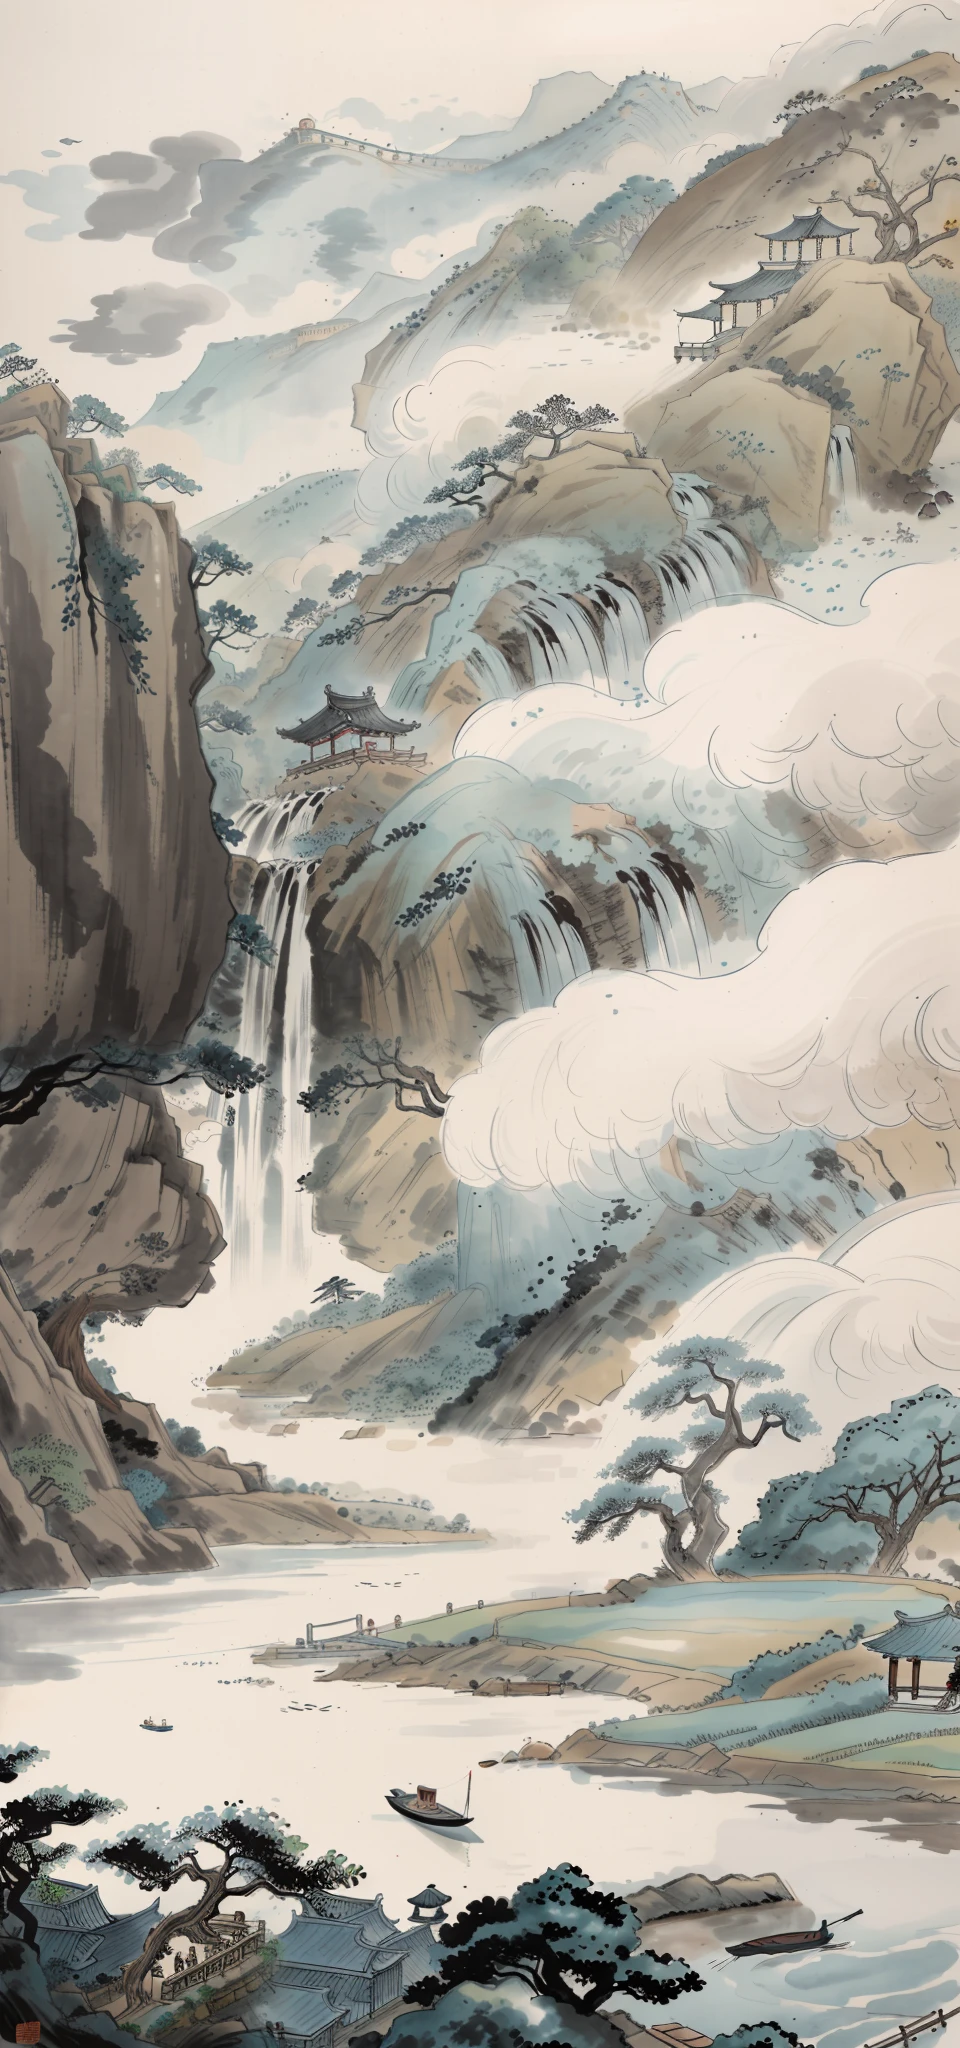 Tuschmalerei der chinesischen Malerei,ein Mädchen，ein ruhiges（großer Baum im Hintergrund，Stone waterfall，Verschiedene Bäume，fließendes Wasser,Weit entfernter Baum,Unkraut,kleine Boote,Anlegestelle,Himmel mit leeren Wolken,Fünf oder sechs Bauernhäuser）